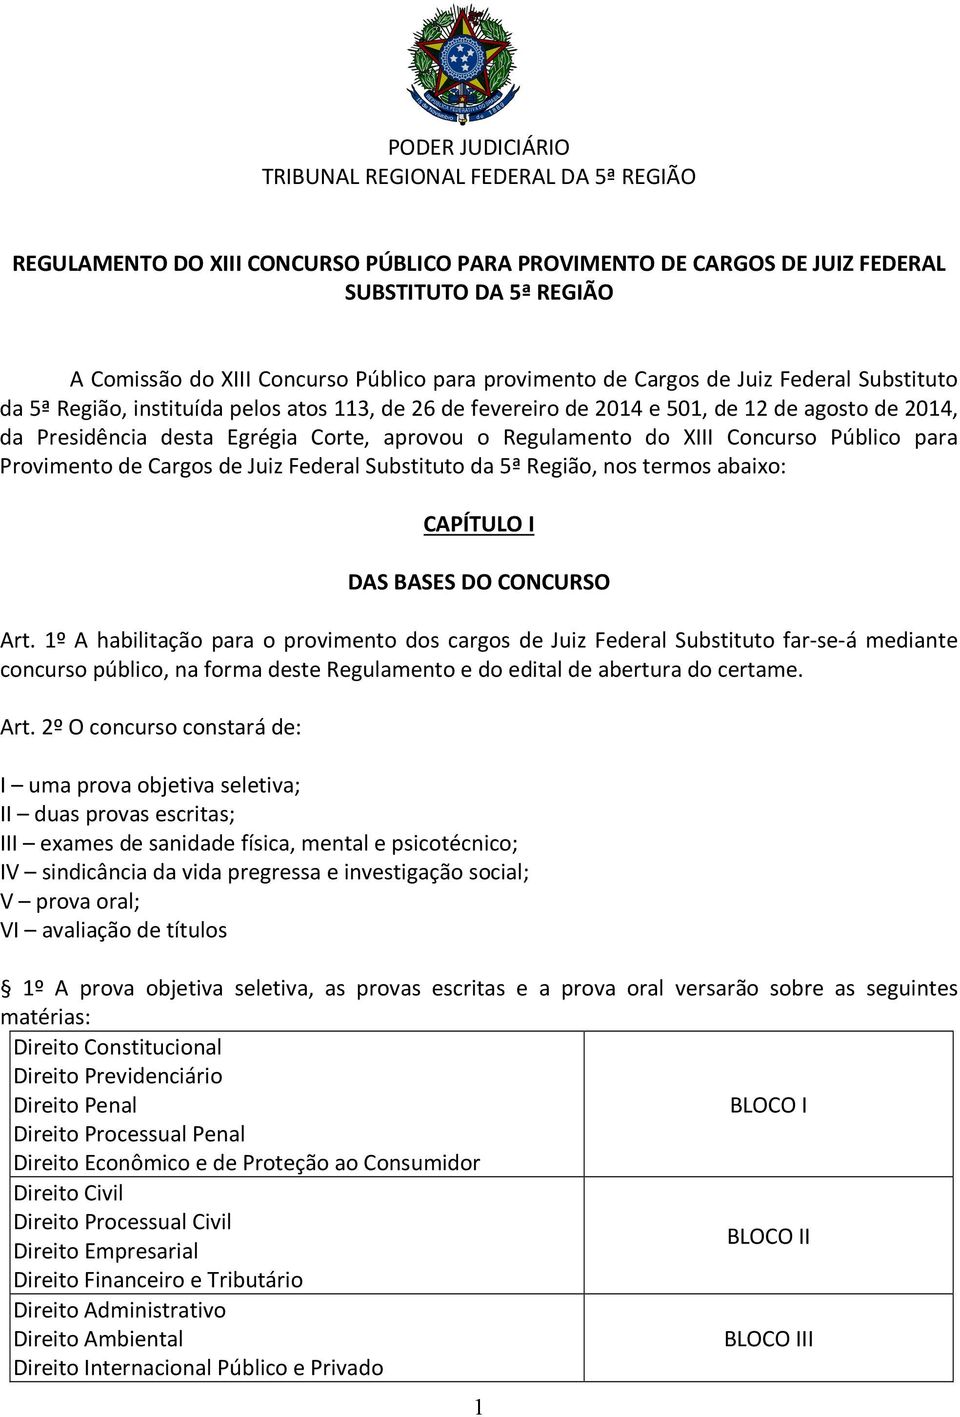 Regulamento do XIII Concurso Público para Provimento de Cargos de Juiz Federal Substituto da 5ª Região, nos termos abaixo: CAPÍTULO I DAS BASES DO CONCURSO Art.